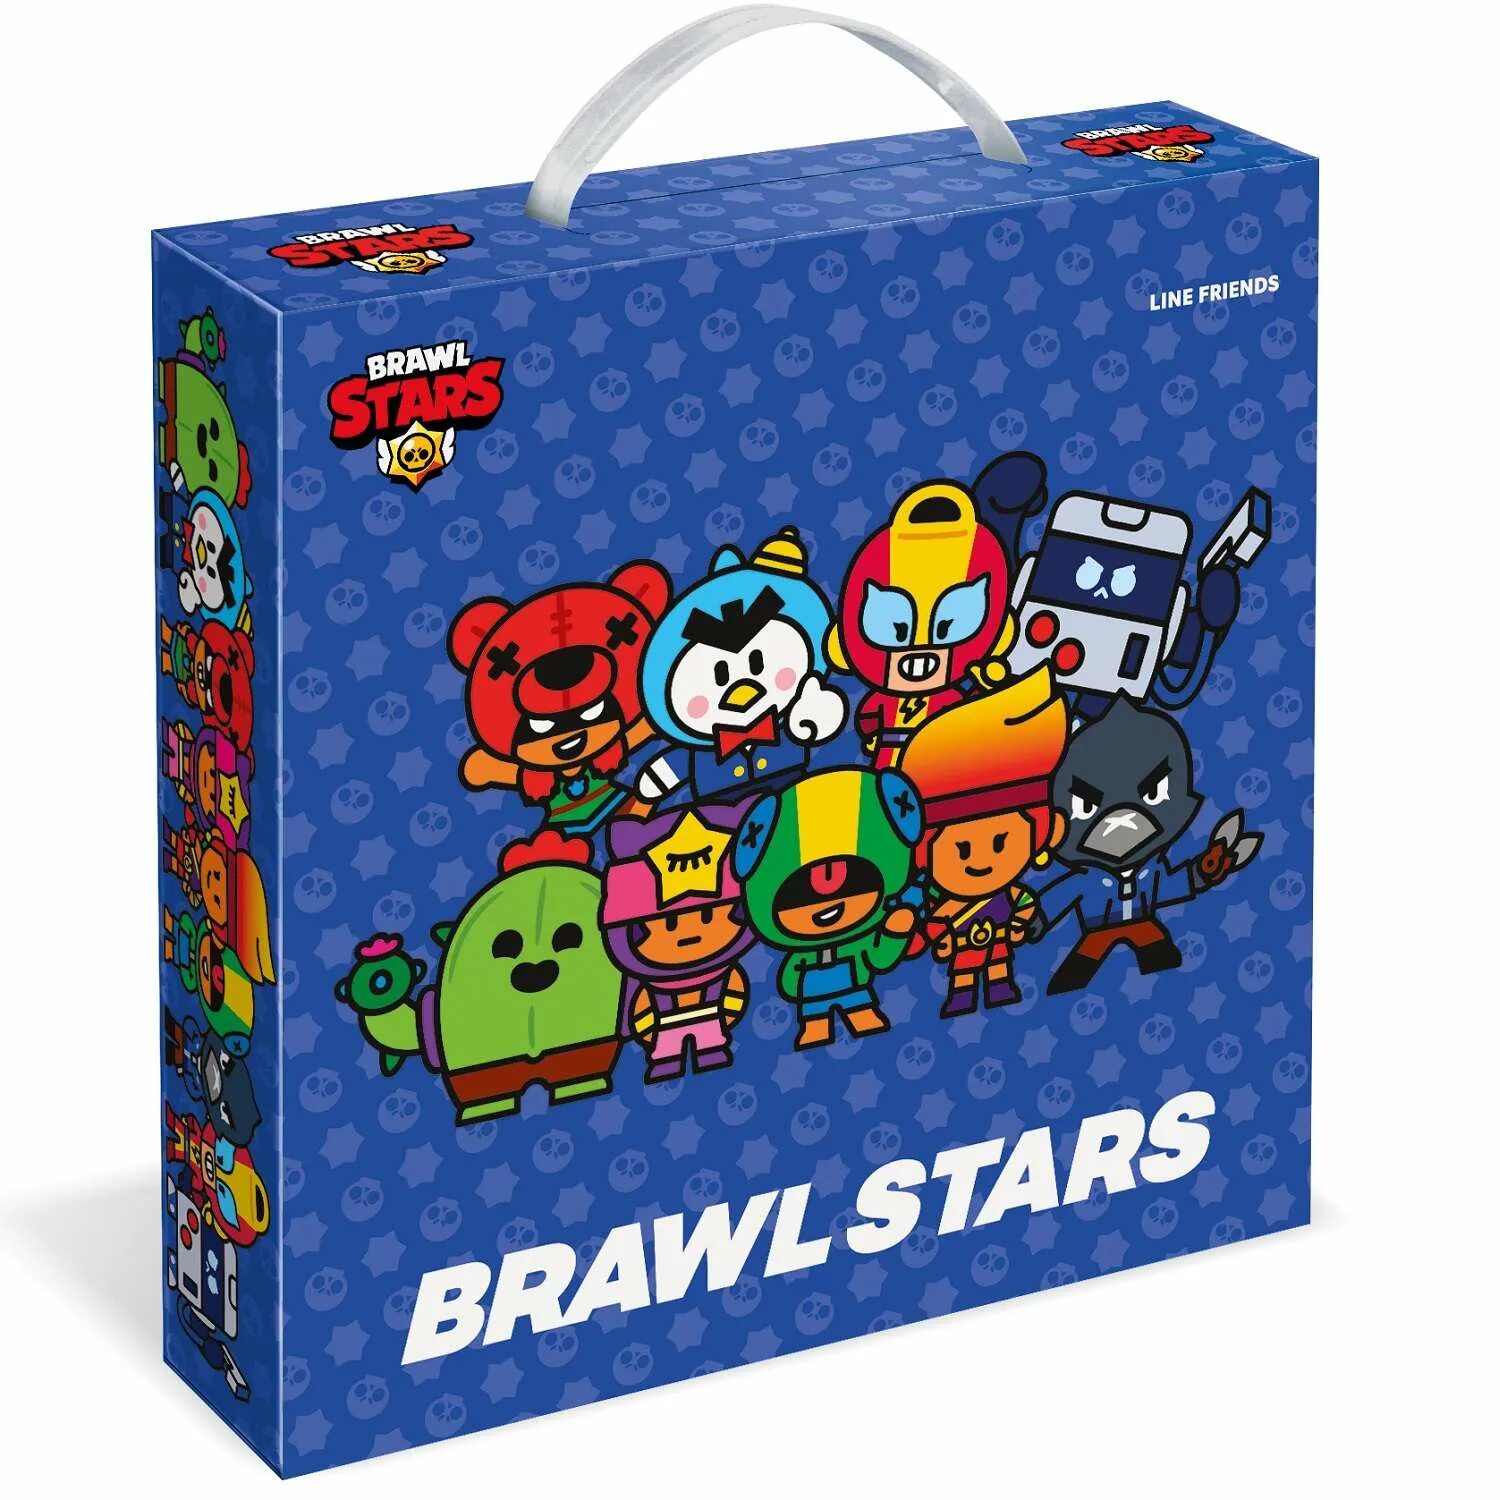 Подарочный набор Brawl Box brawlstars канцелярия для школы синий. БРАВЛ бокс. Box с игрушкой внутри. Игрушечный Brawl Box из Brawl Stars. Brawl box angelo